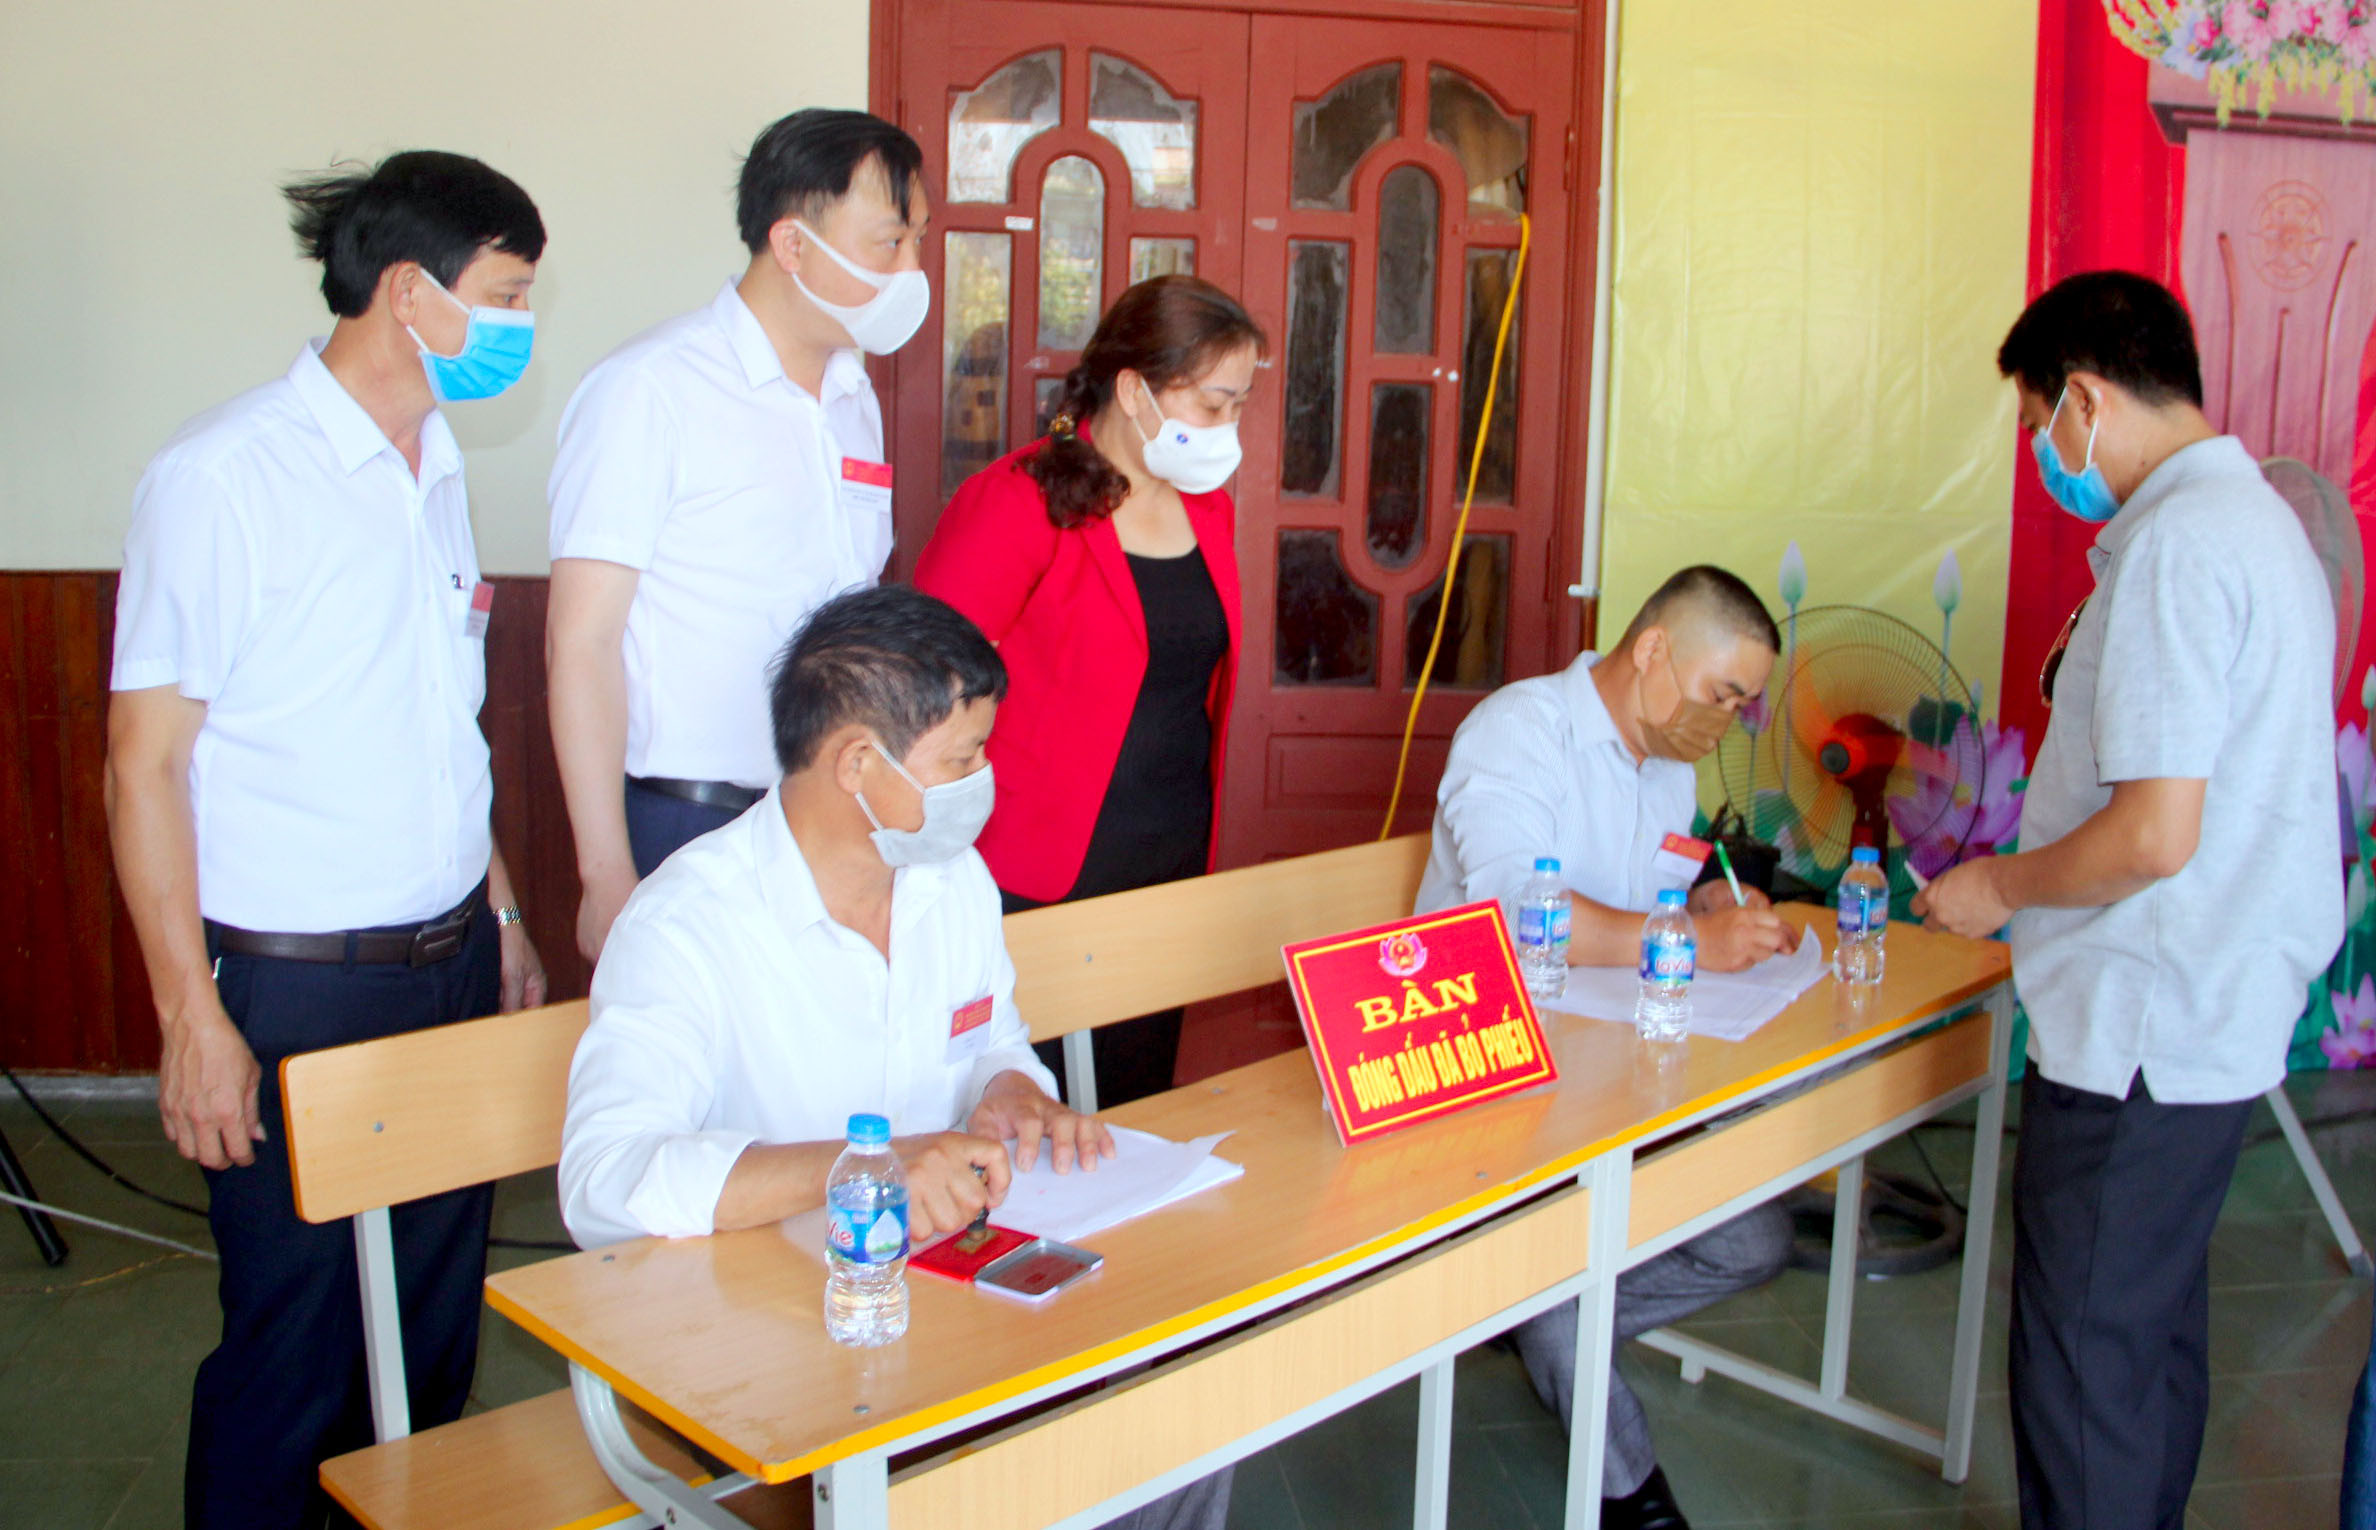 Đồng chí Nguyễn Thị Thu Hường kiểm tra công tác bầu cử tại đơn vị bầu cử số 8, thị trấn Hưng Nguyên. Ảnh: Quang An